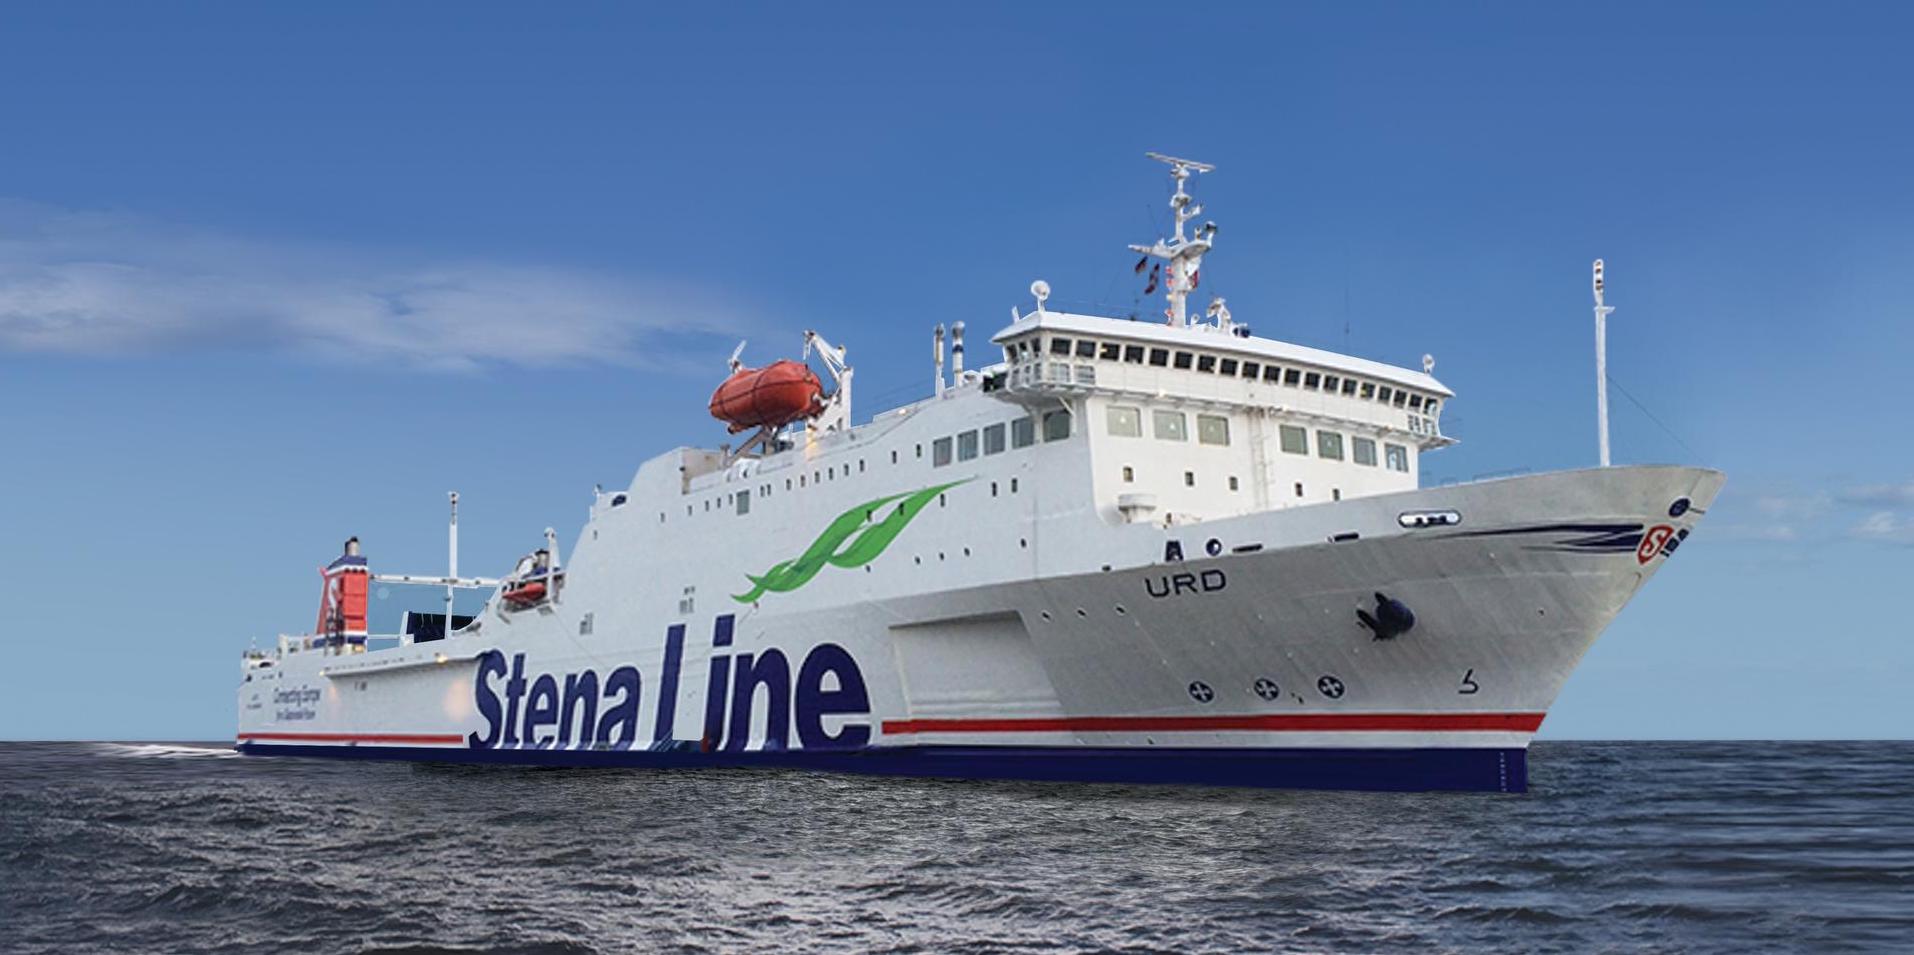 Foto della nave Stena Line - Urd